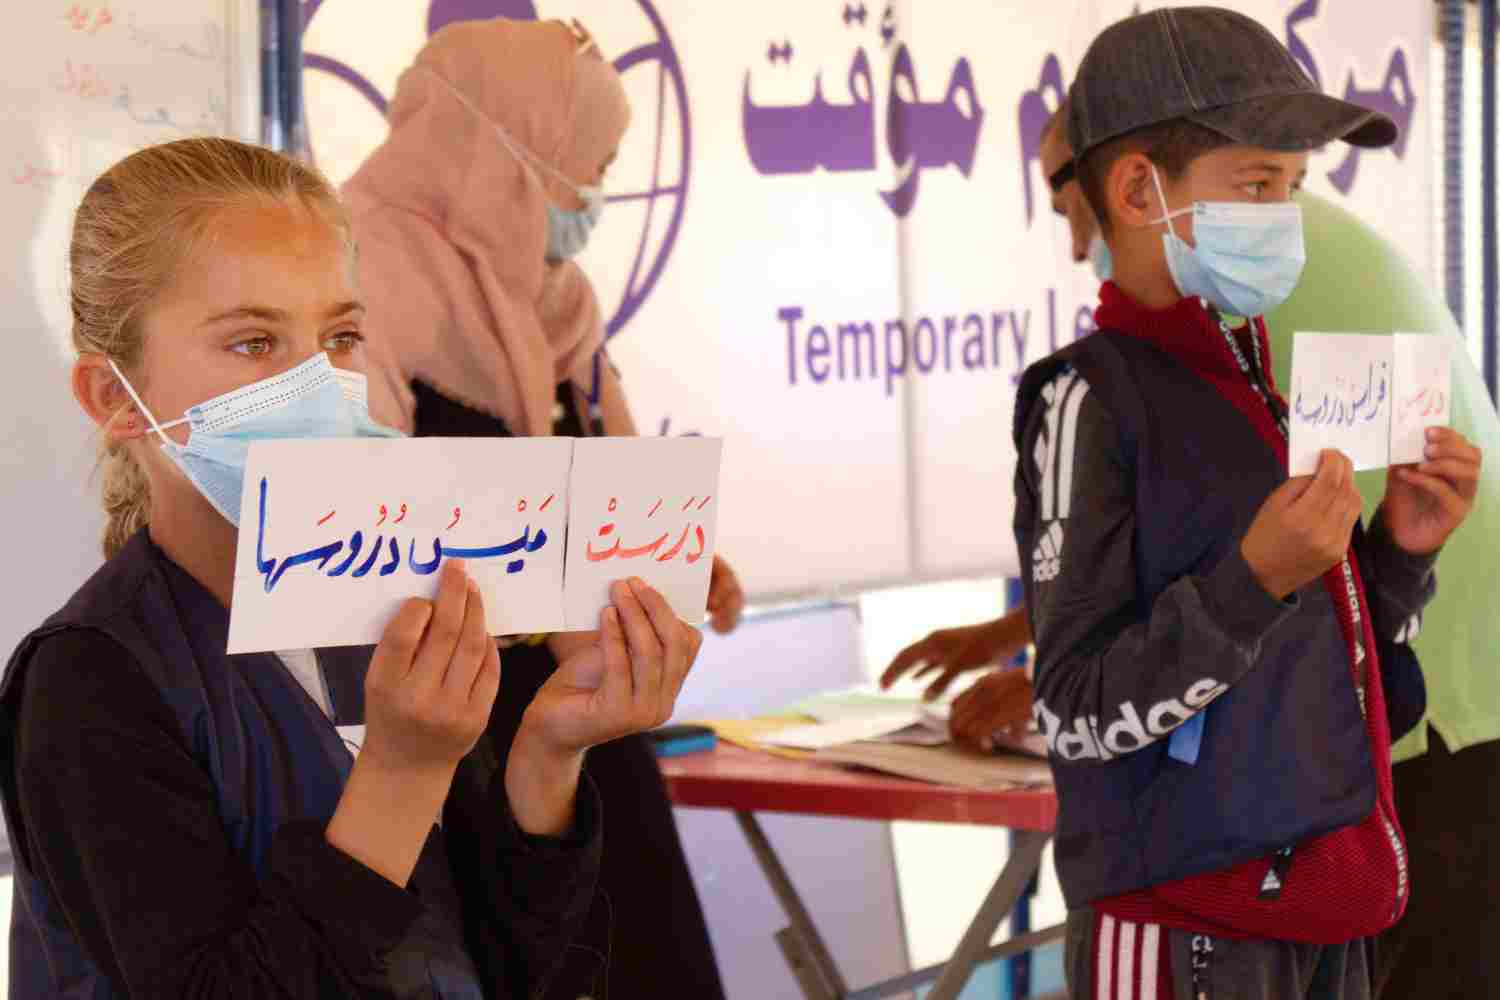 Ein Mädchen hält ein Blatt Papier mit großen arabischen Buchstaben vor sich, weiter hinten ein Junge ebenfalls mit einem Papier